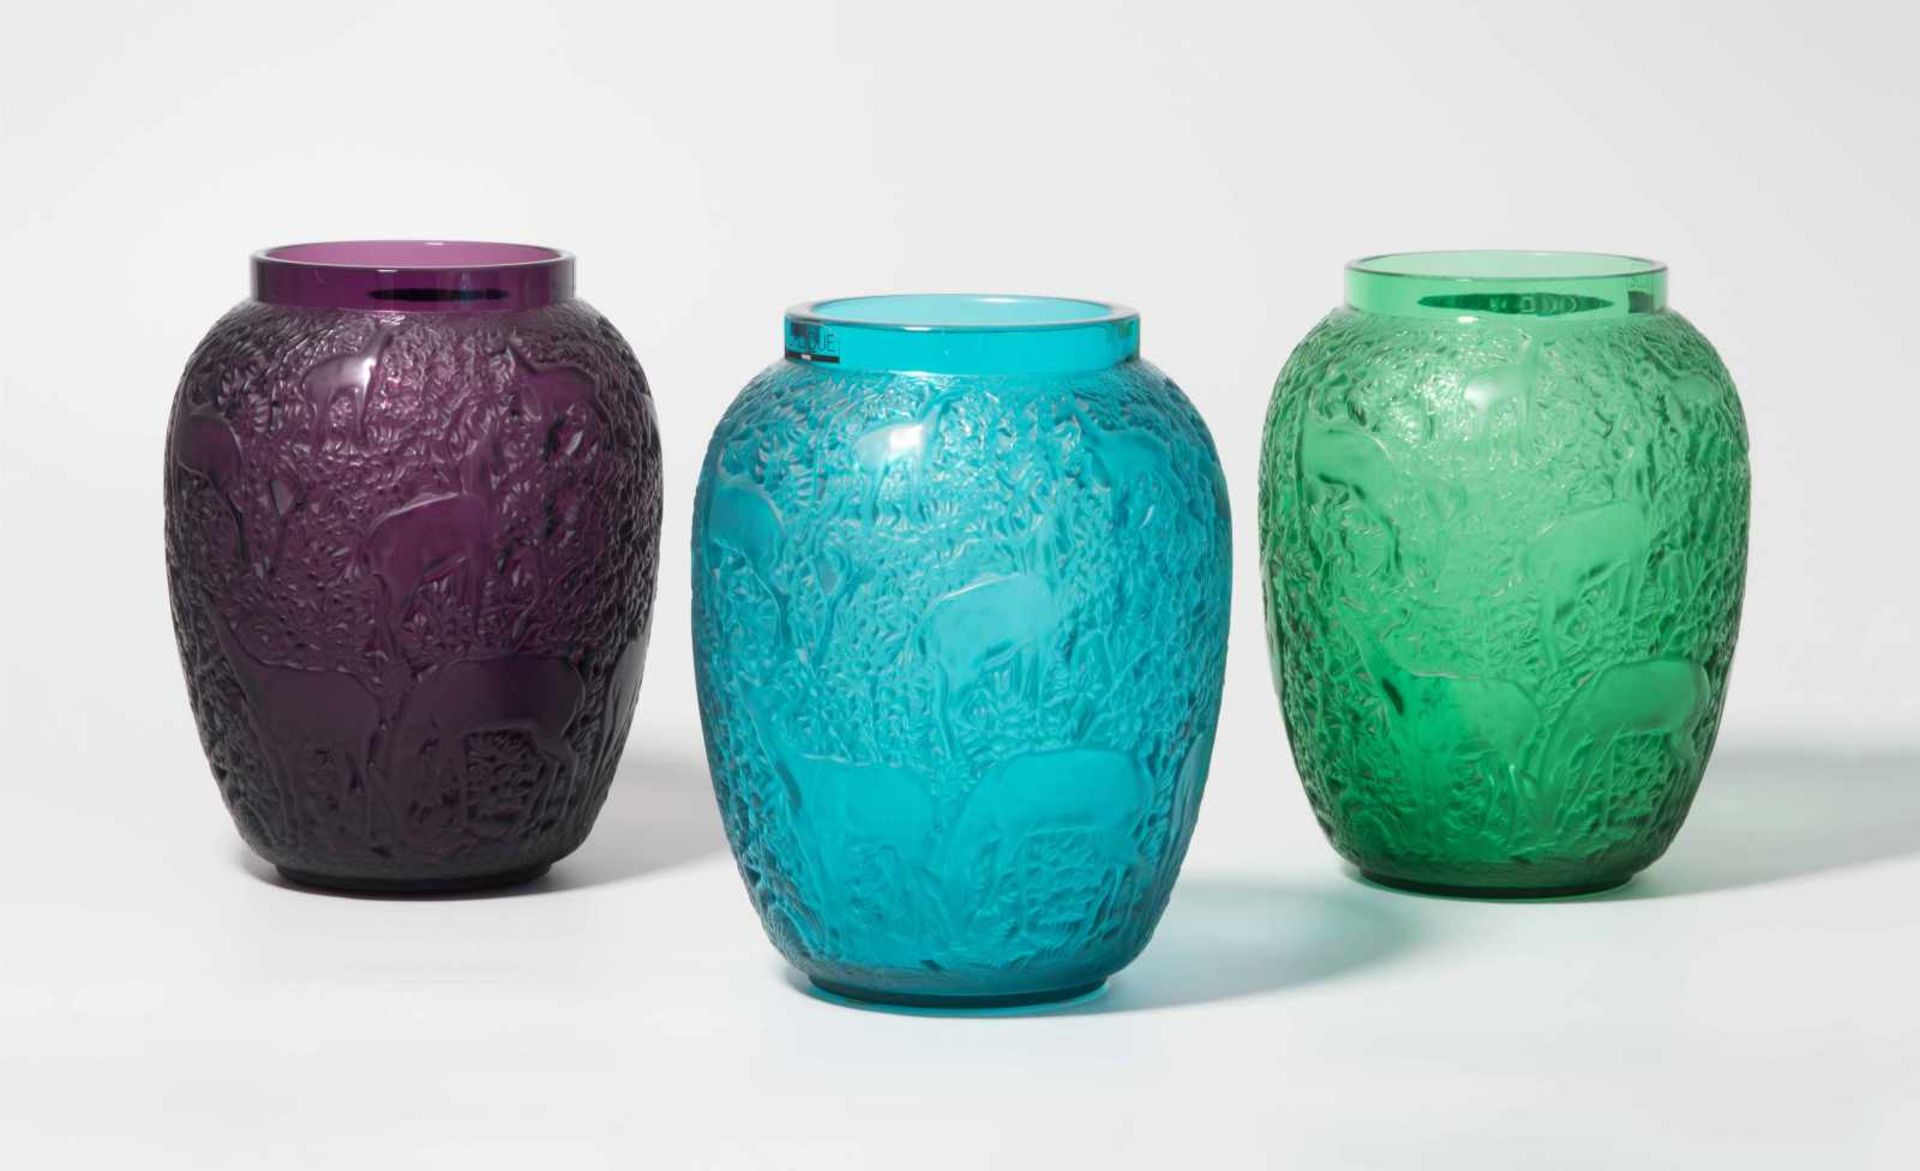 3 Vasen "Biches", Lalique France Ausführung nach 1945, Entwurf 1932. Violettes, blaues und grünes